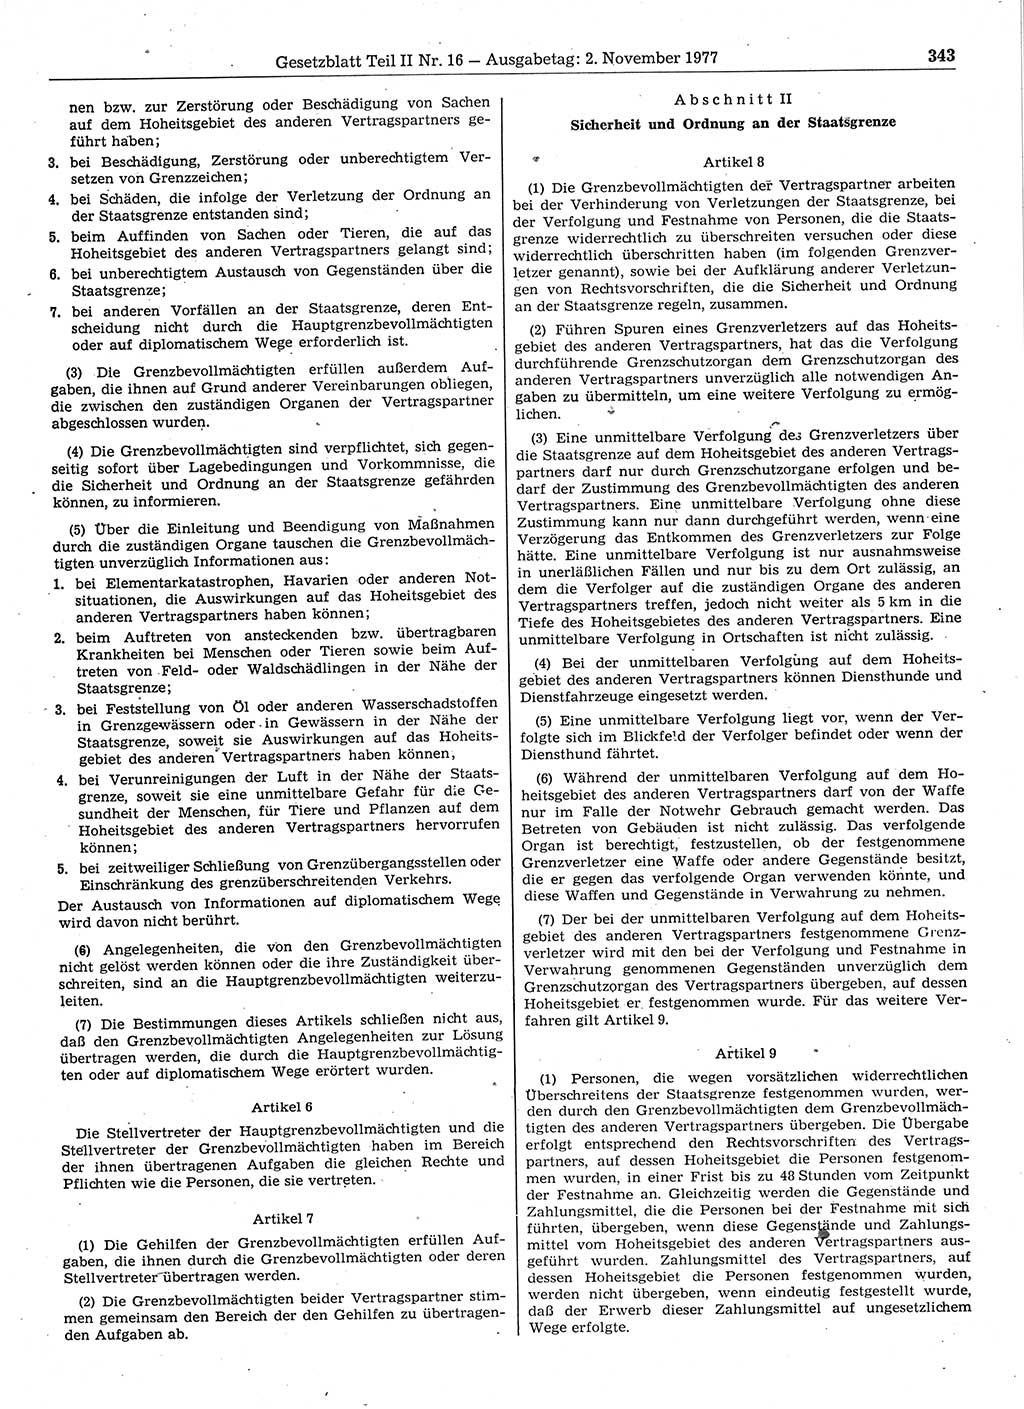 Gesetzblatt (GBl.) der Deutschen Demokratischen Republik (DDR) Teil ⅠⅠ 1977, Seite 343 (GBl. DDR ⅠⅠ 1977, S. 343)